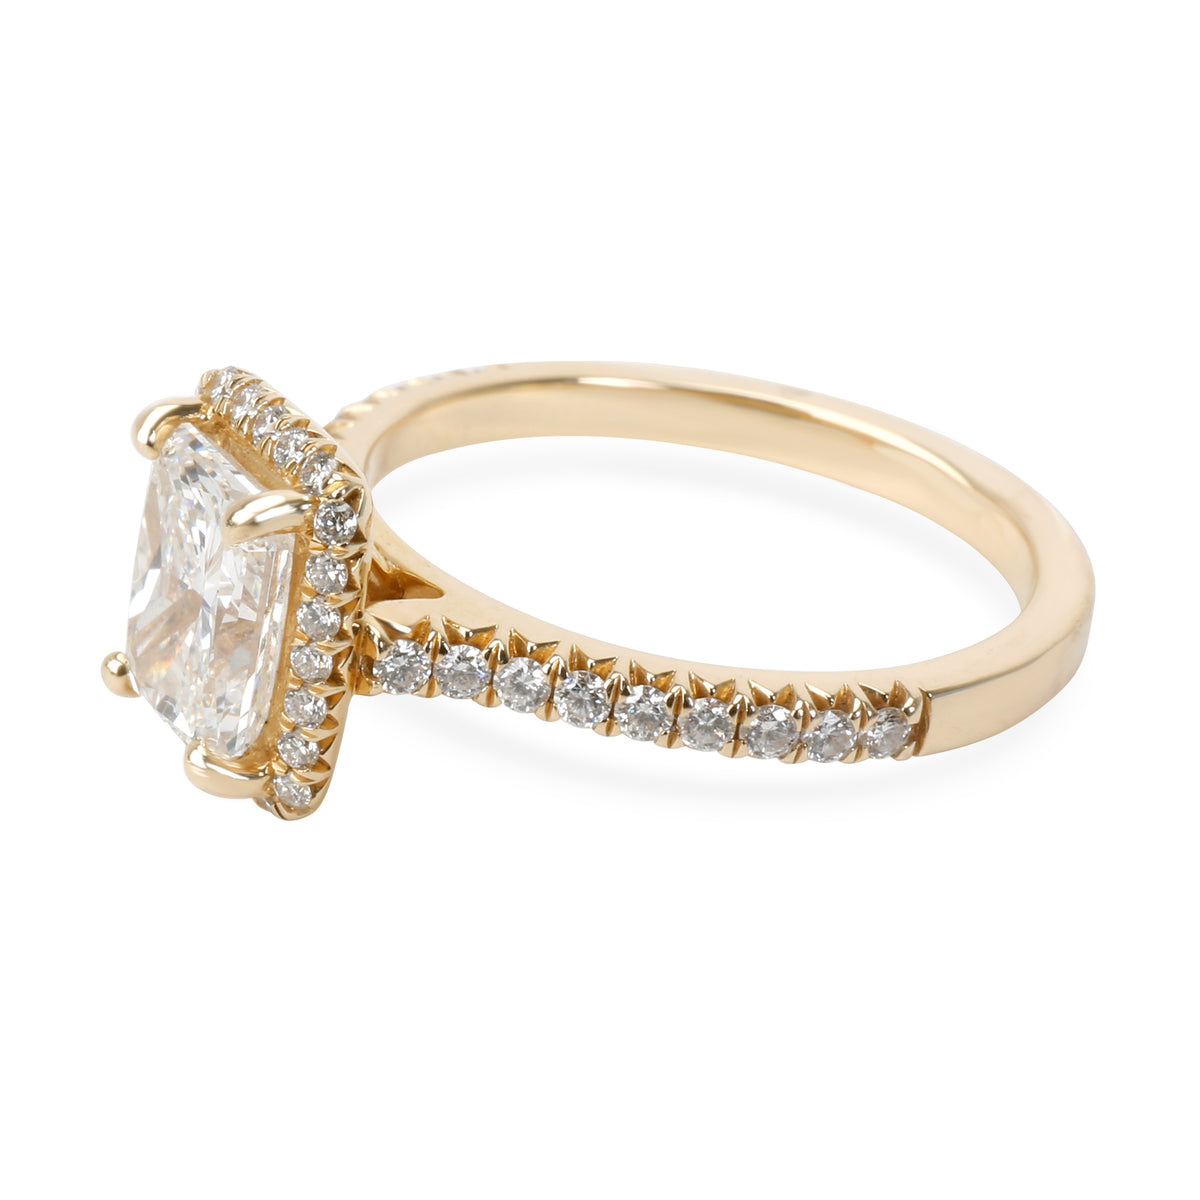 James Allen Radiant Diamond Engagement Ring in 14K Gold GIA E VS2 1.91 CTW